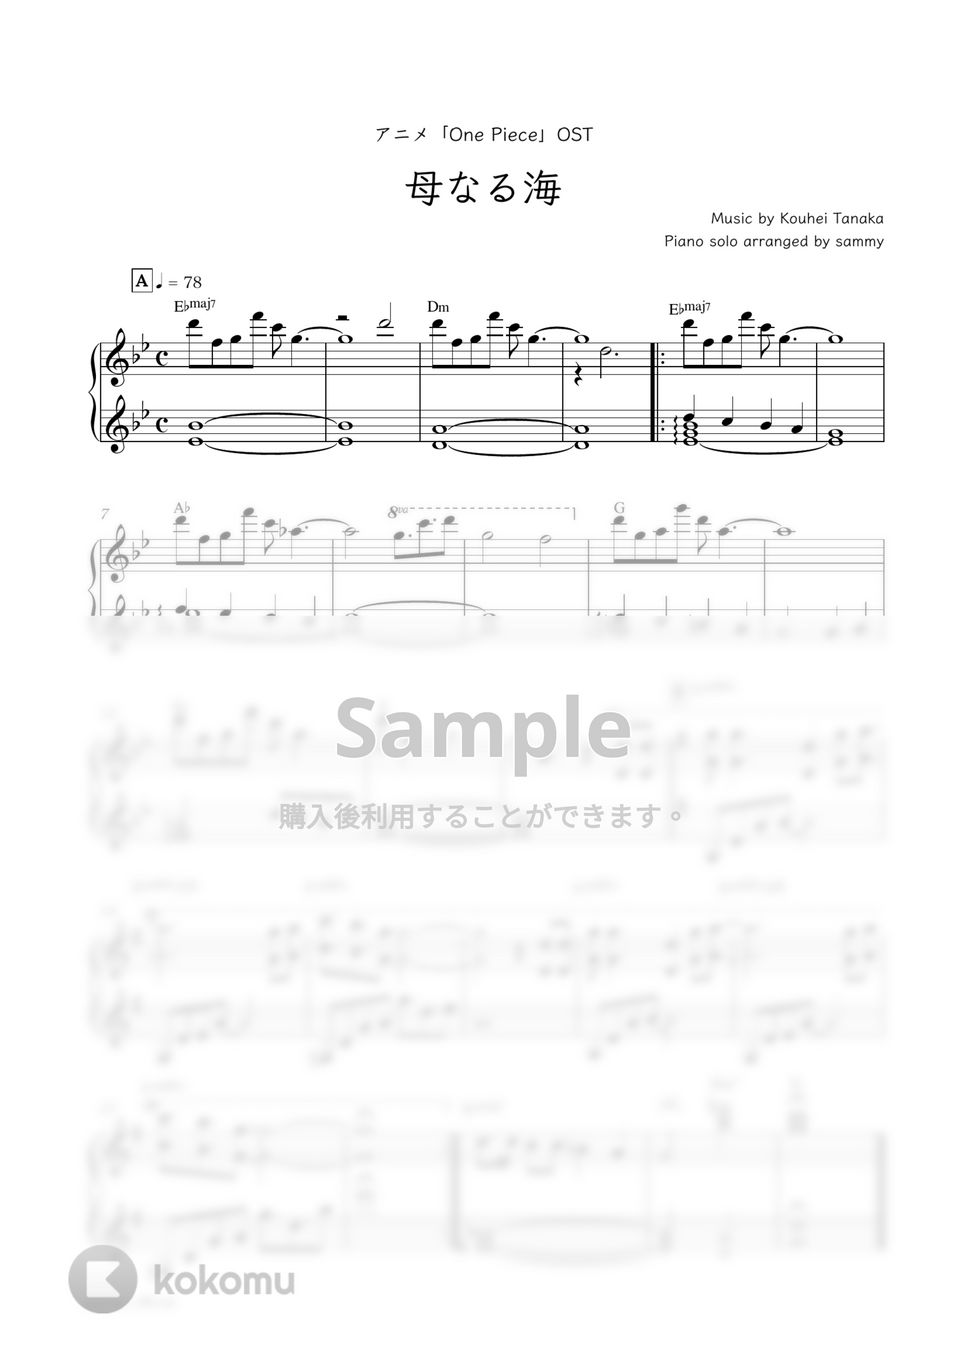 アニメ『ONE PIECE』OST - 母なる海 by sammy